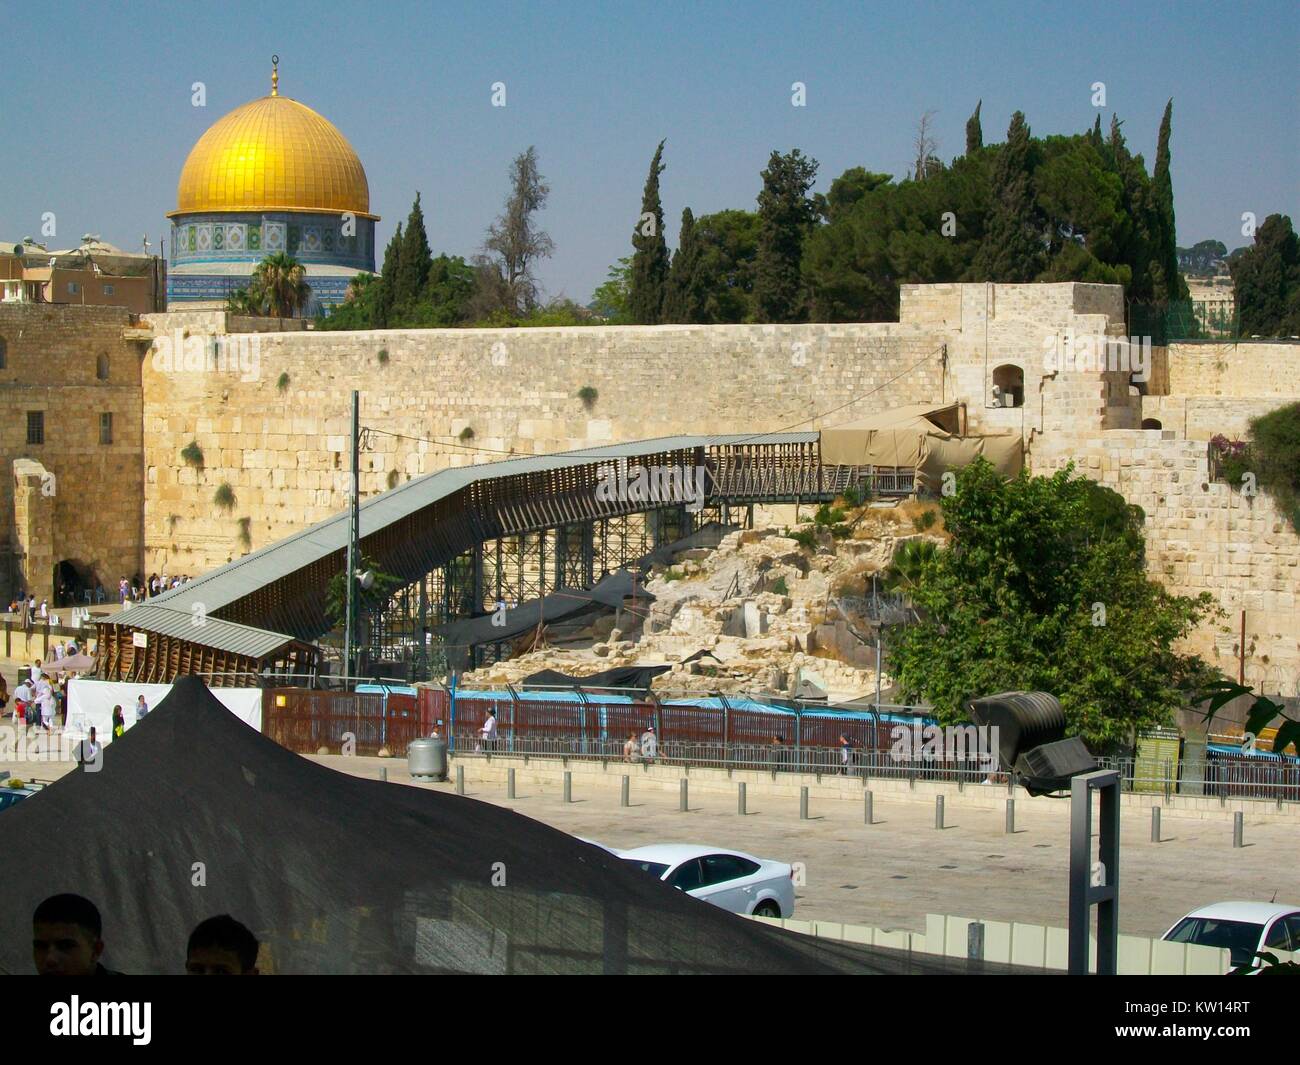 Parete occidentale (Kotel) e Cupola della roccia, compresa una rampa costruita come parte di un progetto di restauro, Gerusalemme, Israele, 2012. Foto Stock